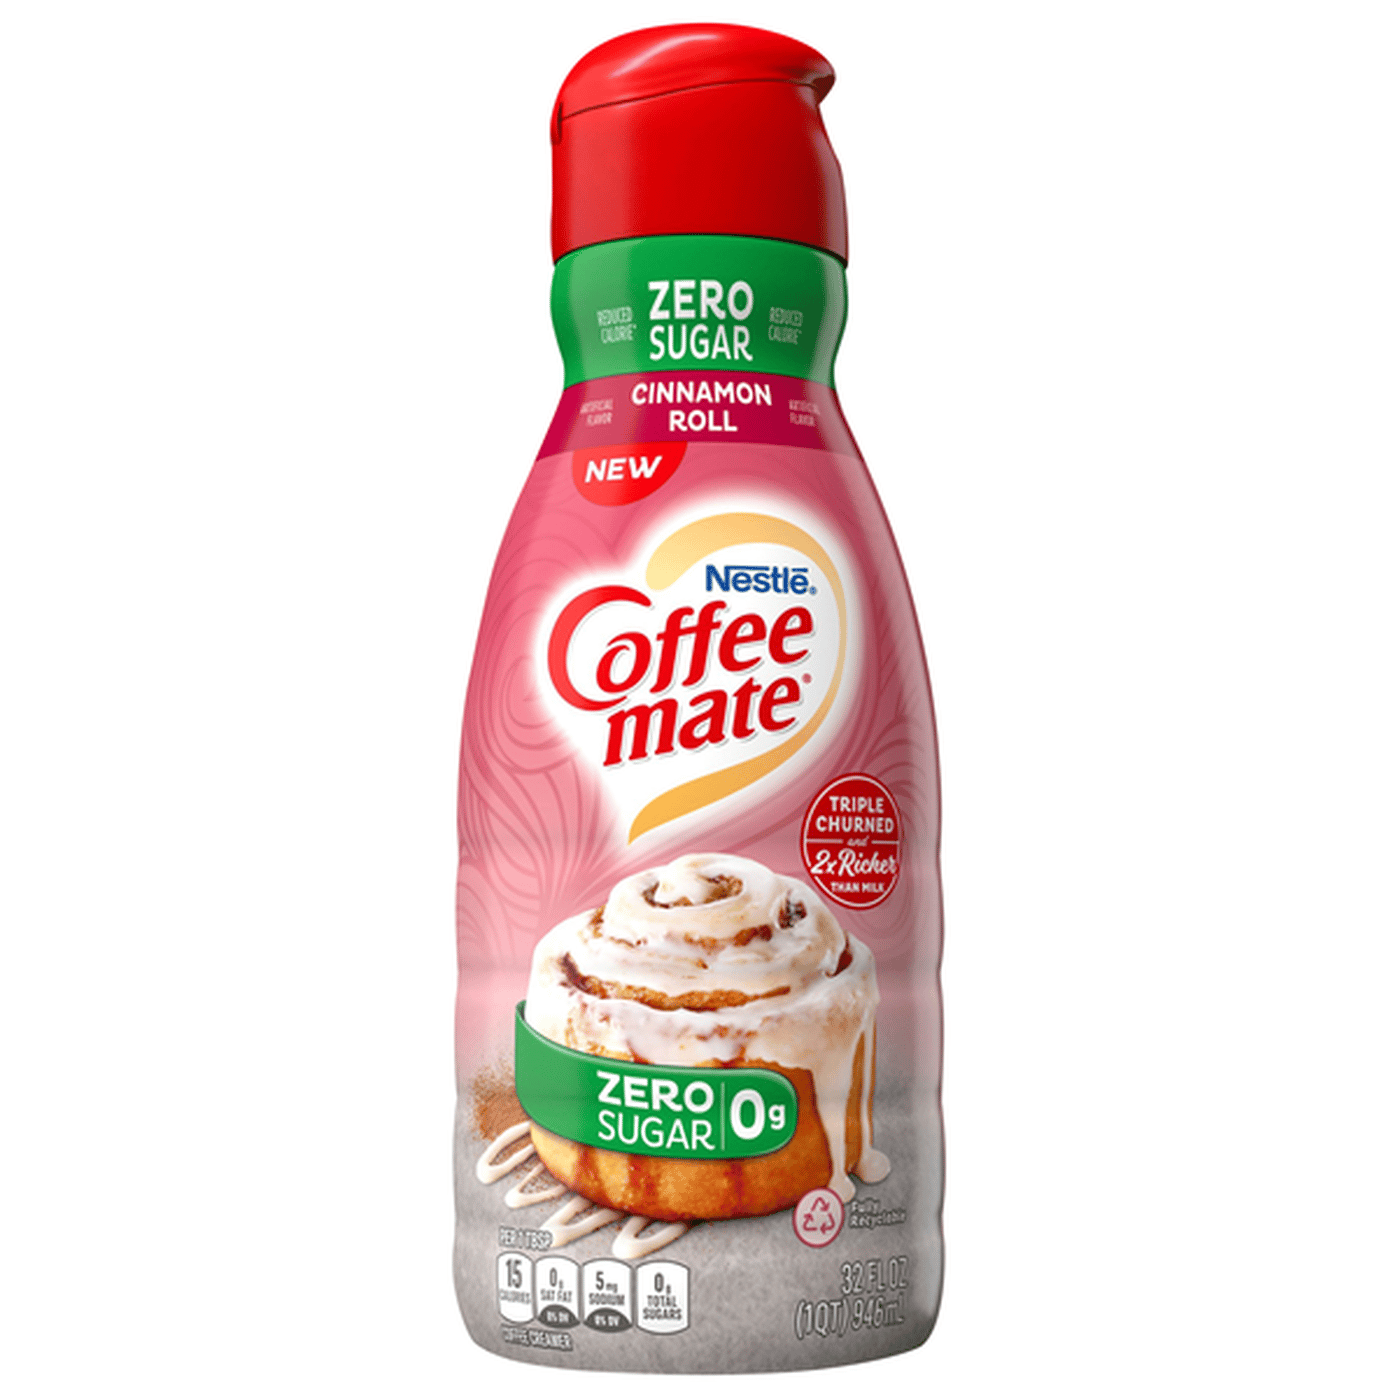 Nestlé Coffee mate Zero Sugar Cinnamon Roll Liquid Coffee Creamer (32 ...